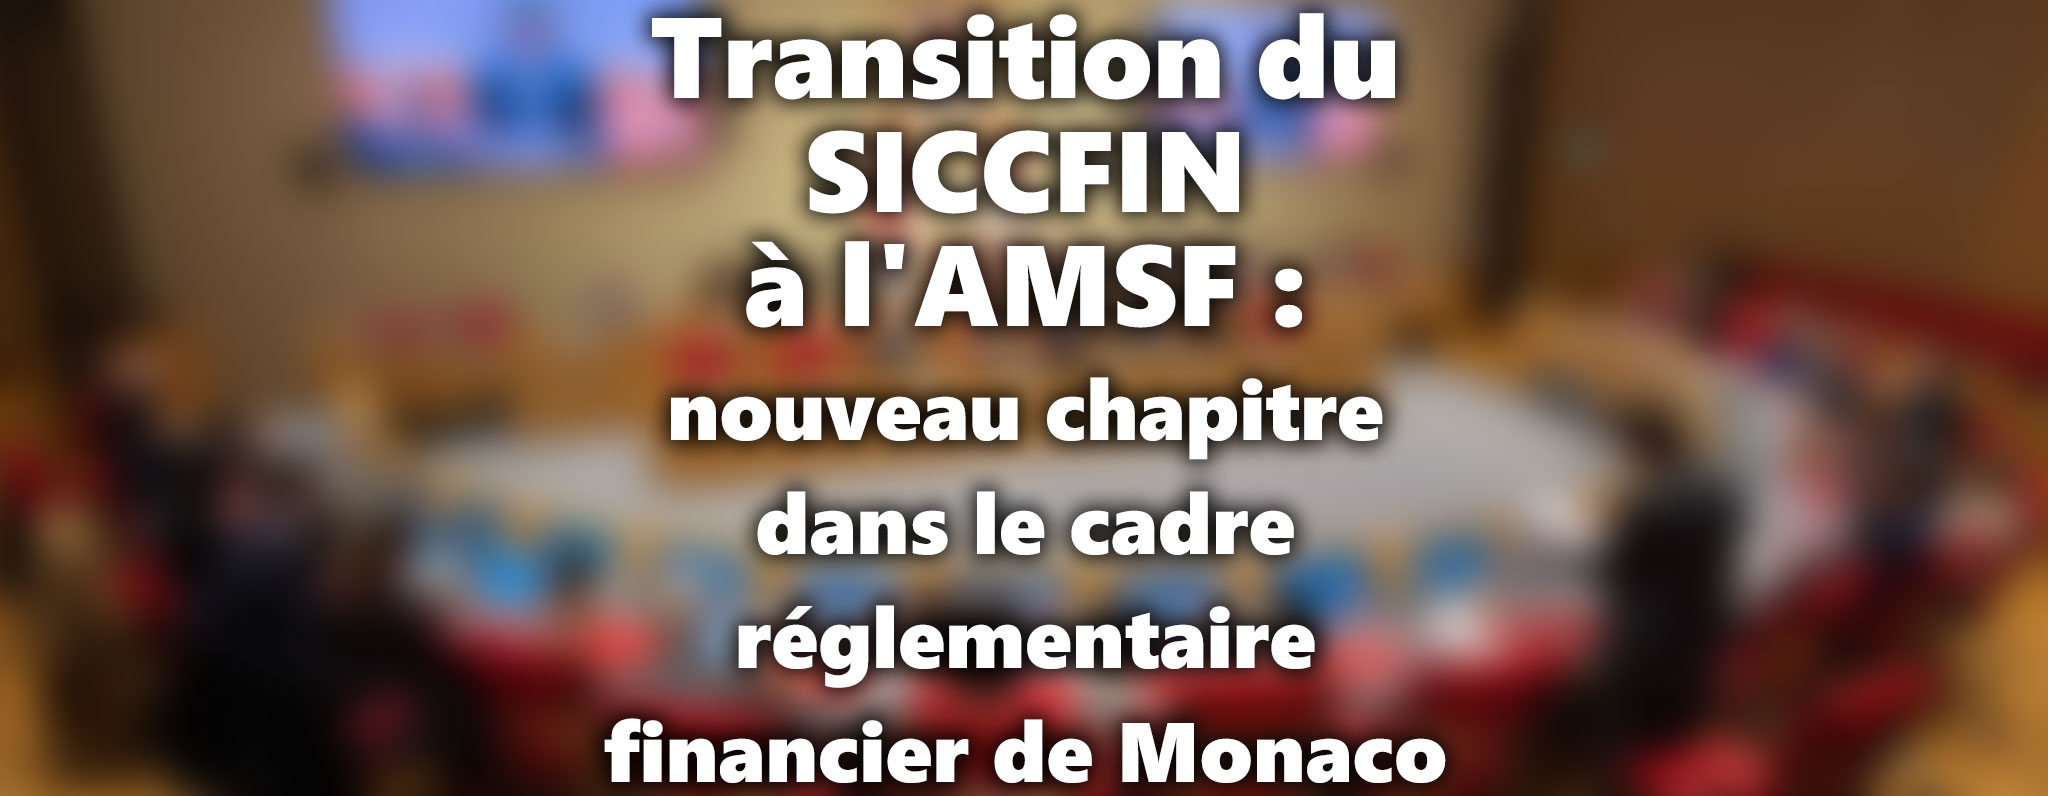 Transition du SICCFIN à l'AMSF : un nouveau chapitre dans le cadre réglementaire financier de Monaco